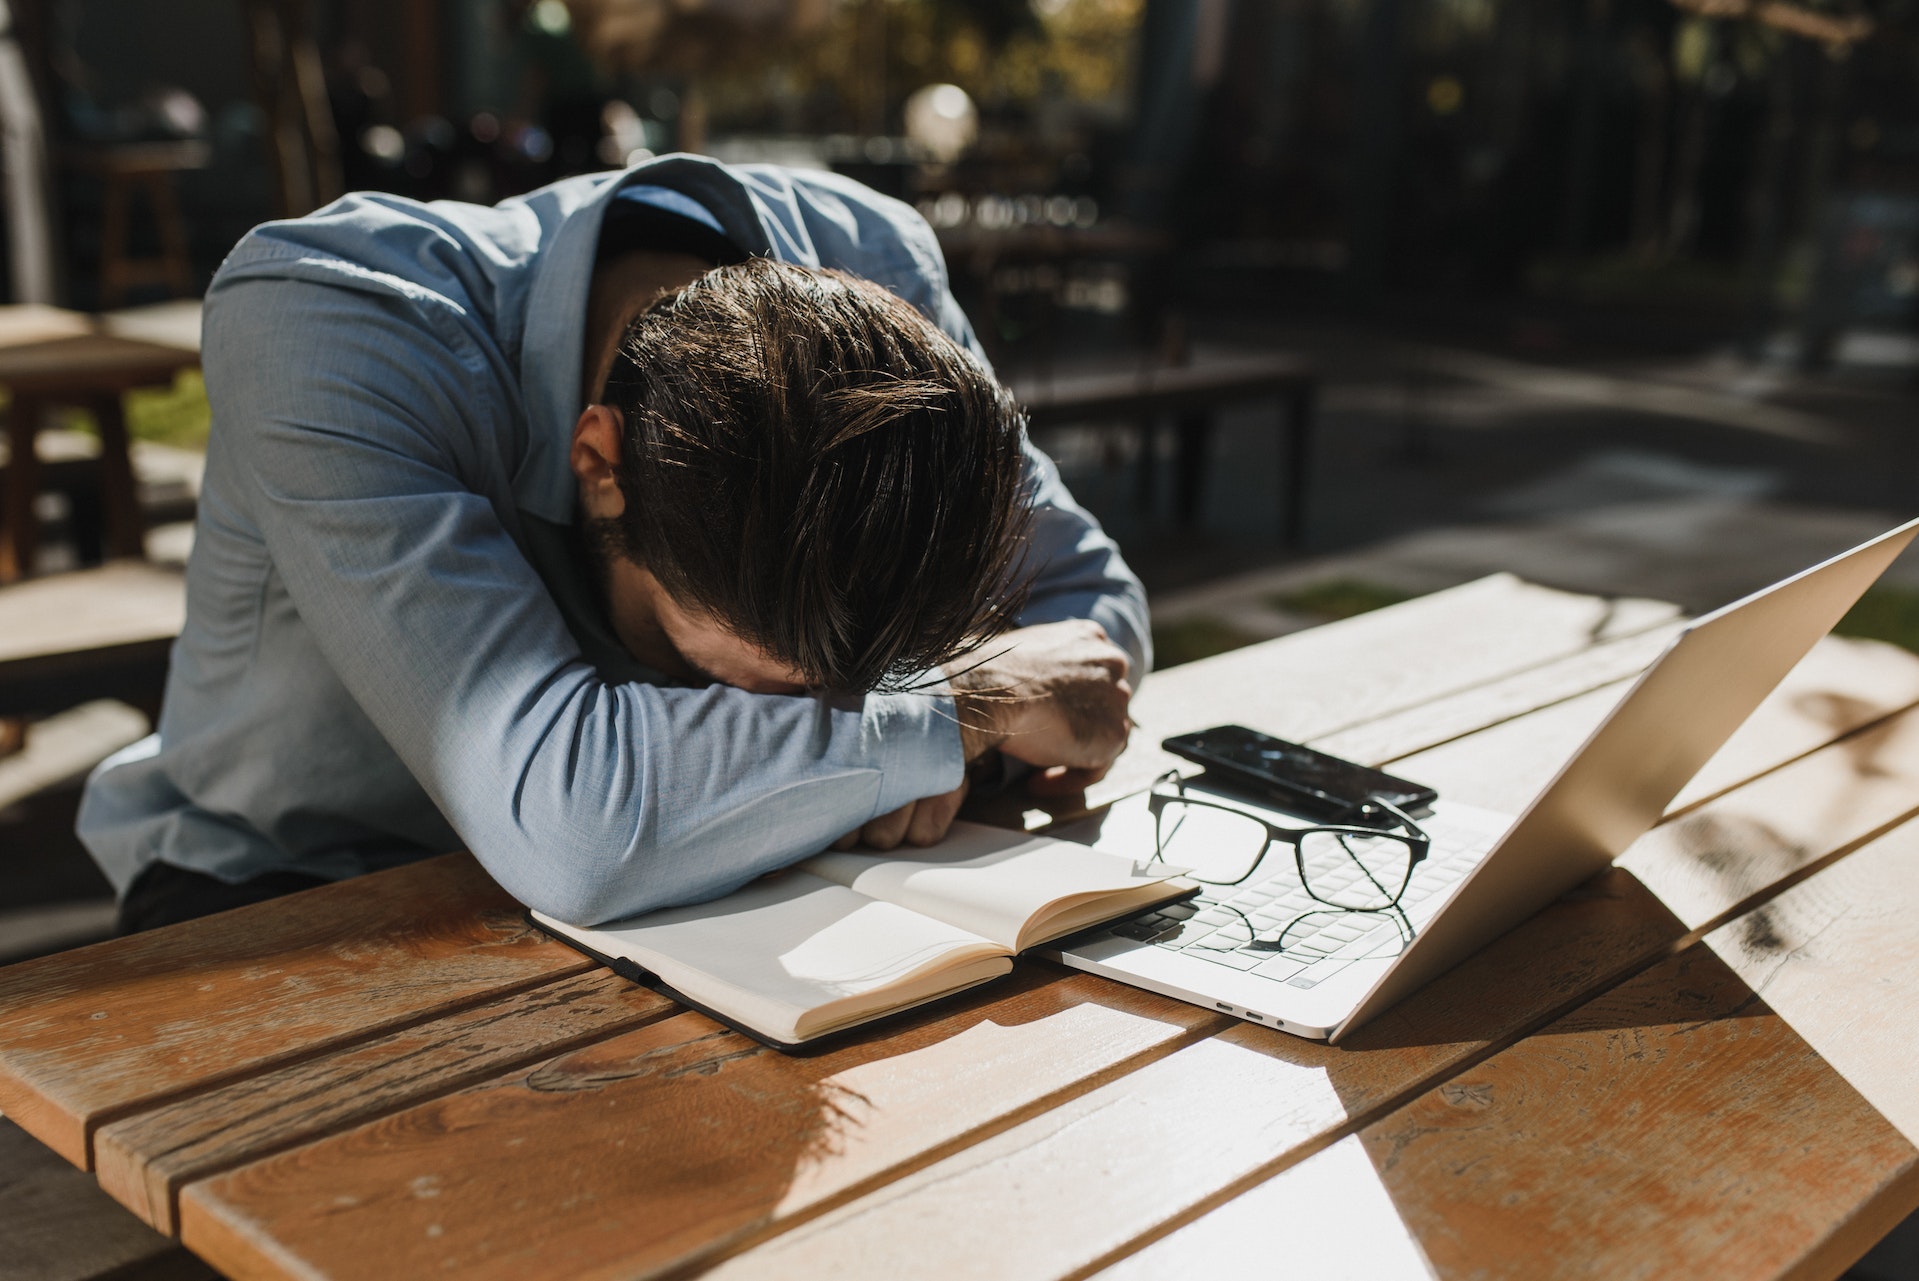 مرد خسته در حین کار - 5 دلیل برای اینکه همیشه احساس خستگی می کنید، به علاوه نکاتی برای افزایش انرژی شما